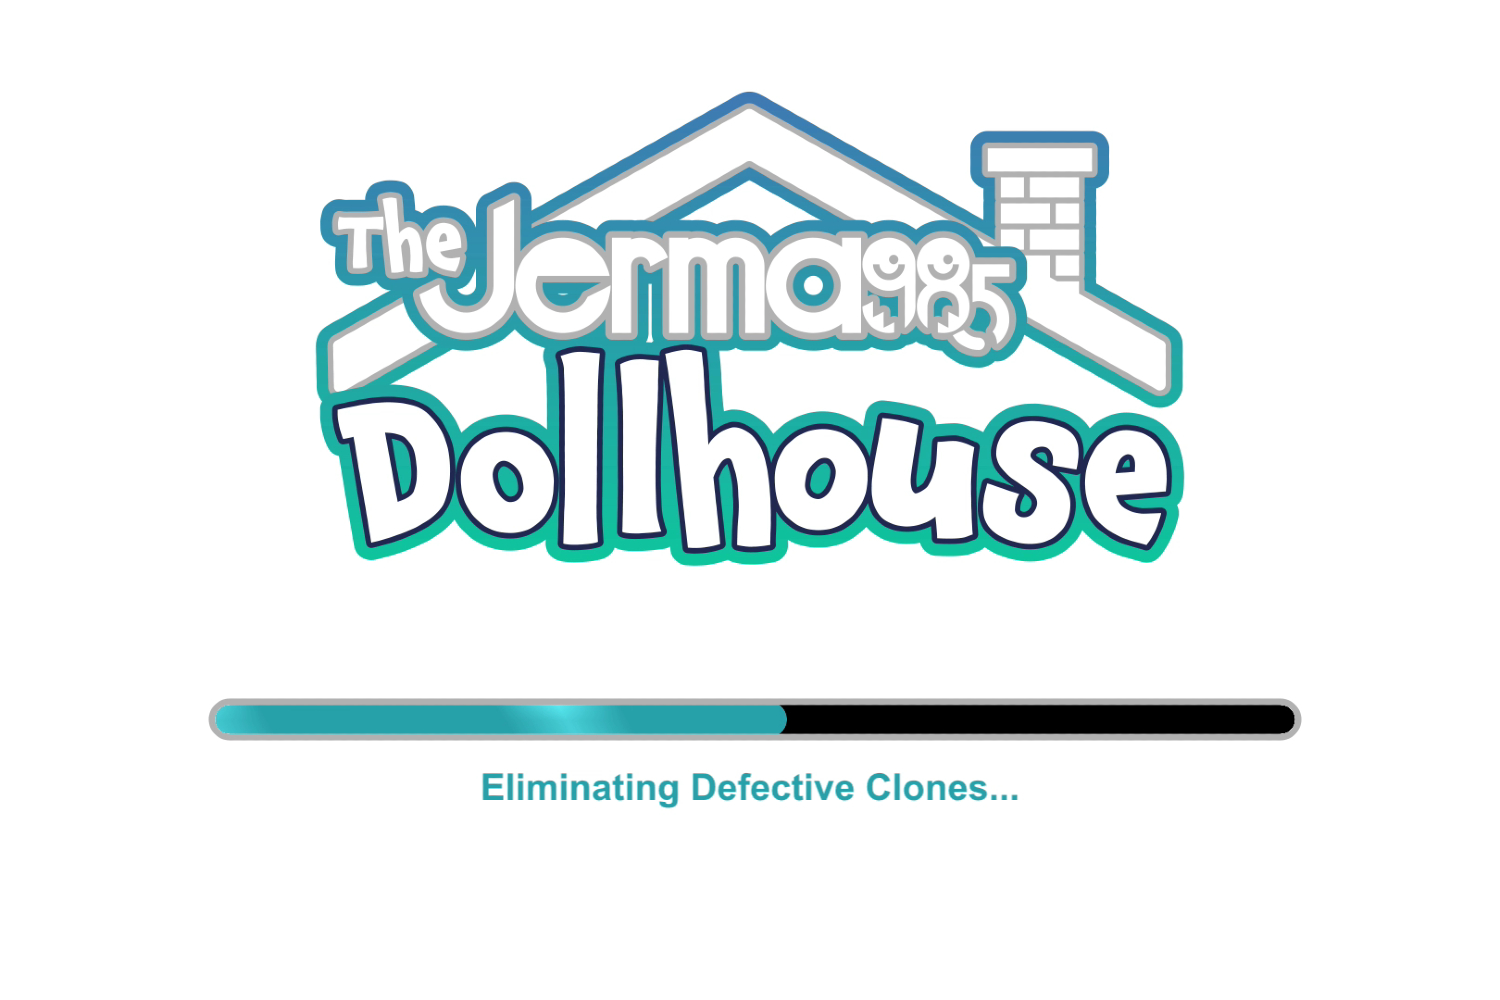 streamer twich audiencia the sims dollhouse jerma twitch